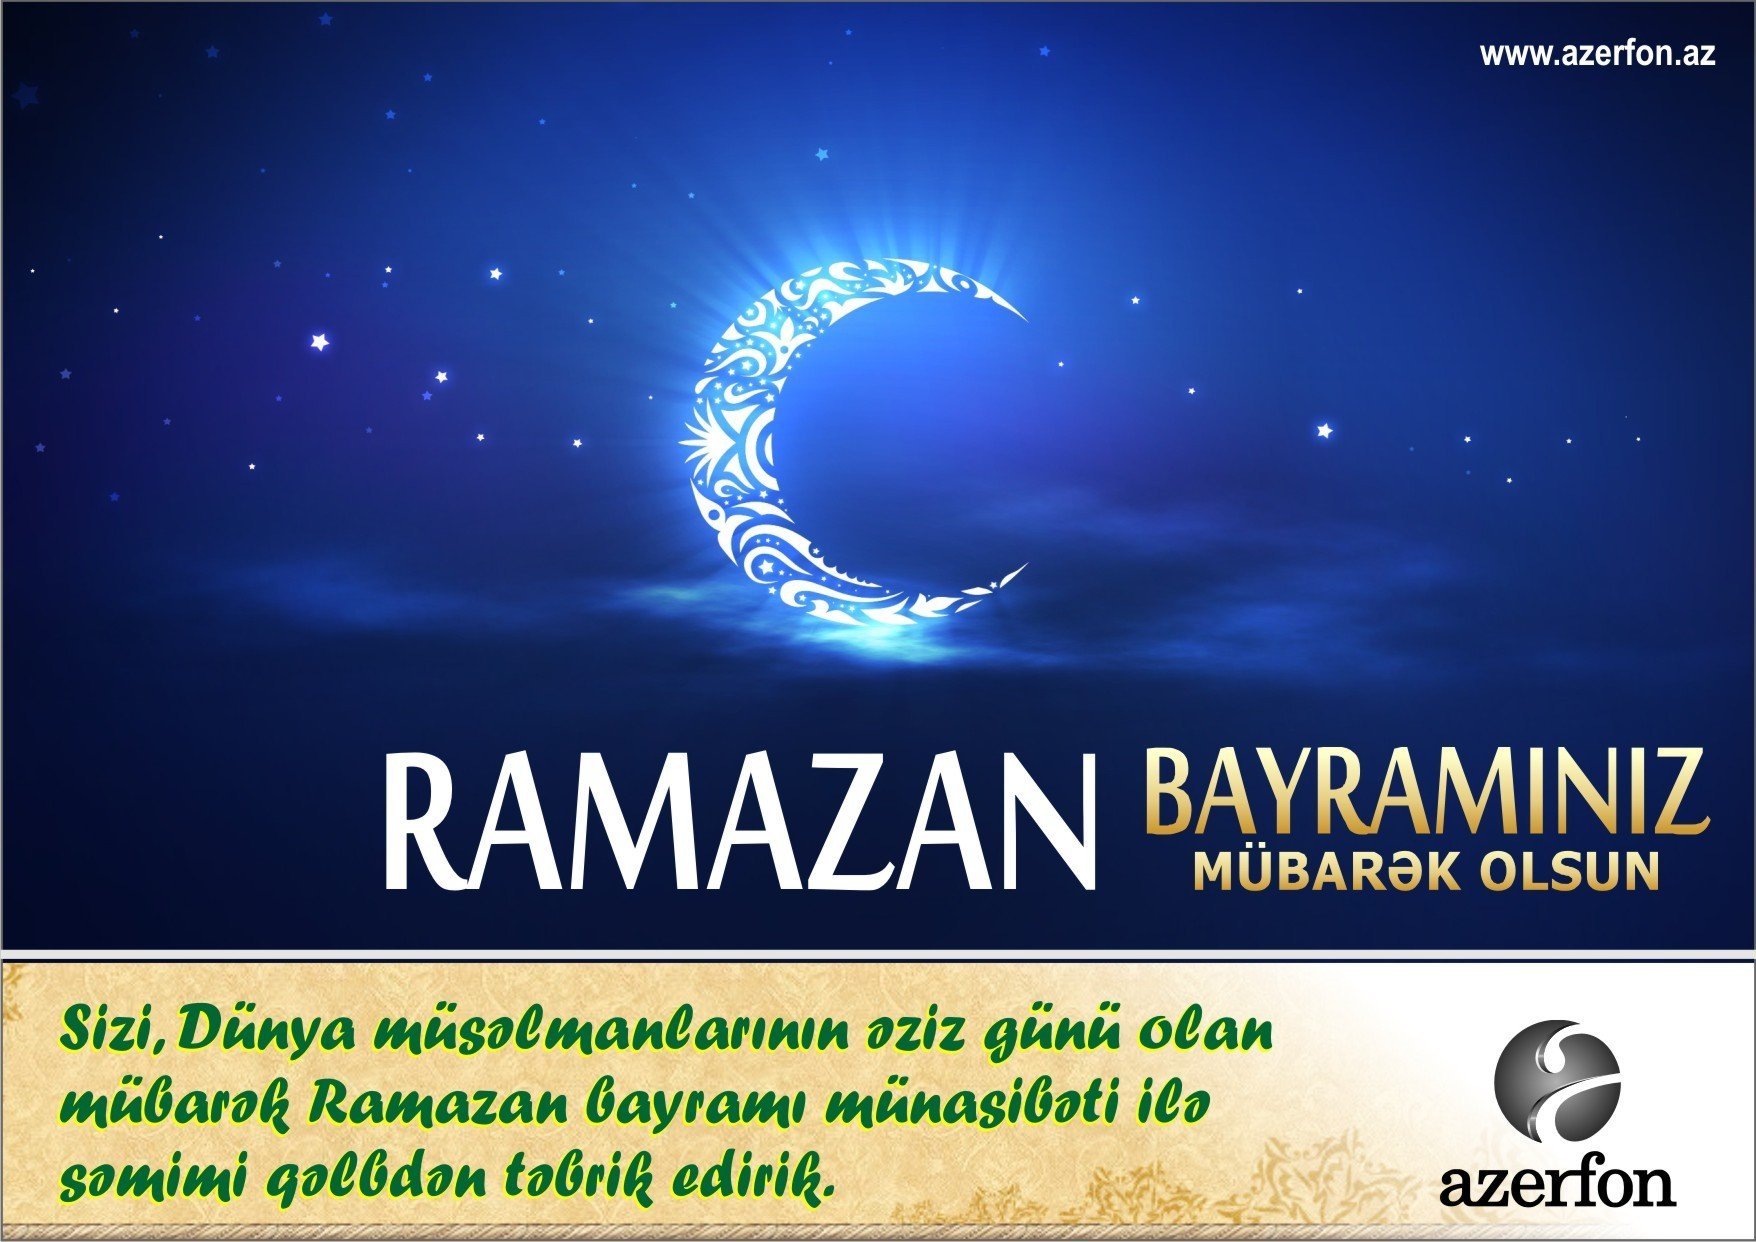 Поздравление с рамаданом на турецком языке. Поздравление с Рамаданом. Рамазан поздравления. С праздником Рамадан. Рамазан открытки поздравления.